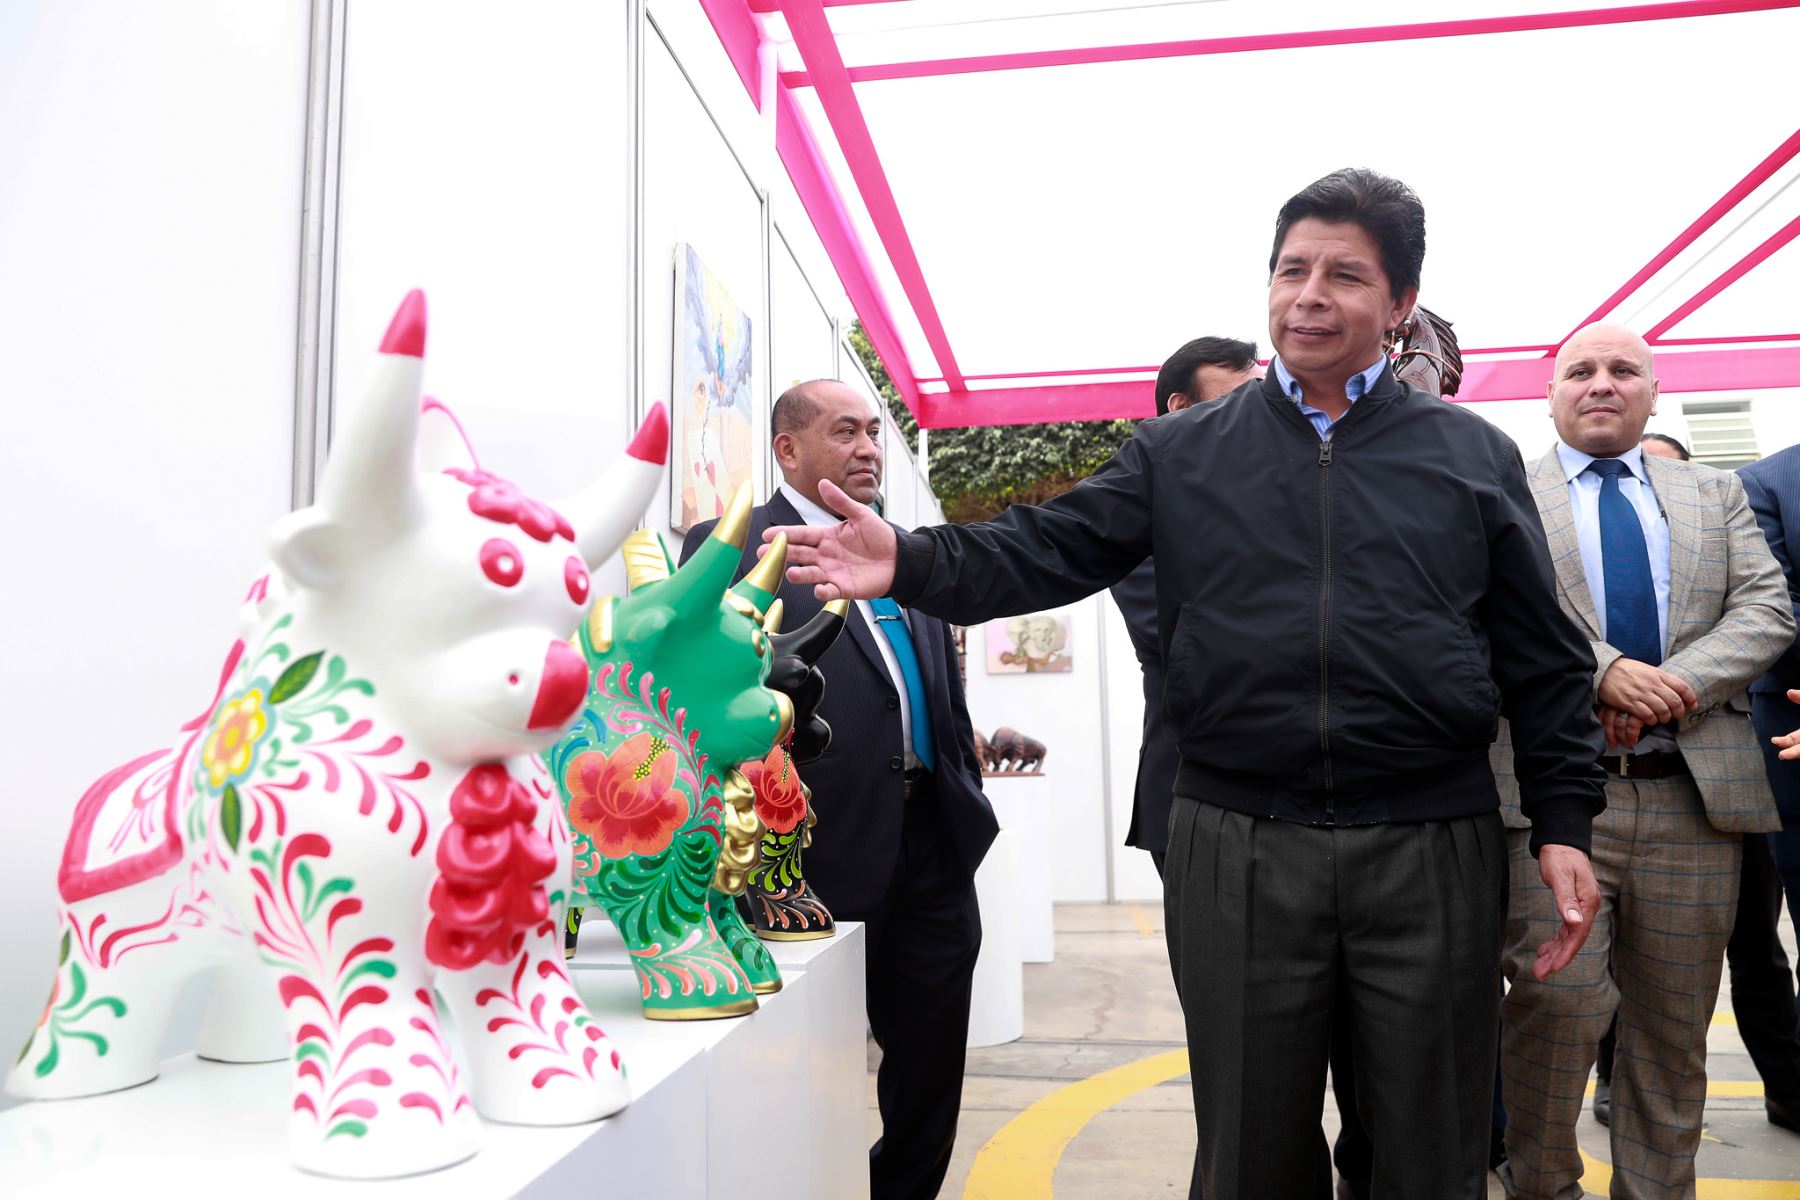 Presidente Pedro Castillo Terrones junto al ministro de justicia, Félix Chero,  visitan la exposición artística "Cárceles productivas para el mundo" en la sede del Ministerio de Justicia y Derechos Humanos del Perú, en Miraflores.
Foto: ANDINA/Presidencia Perú